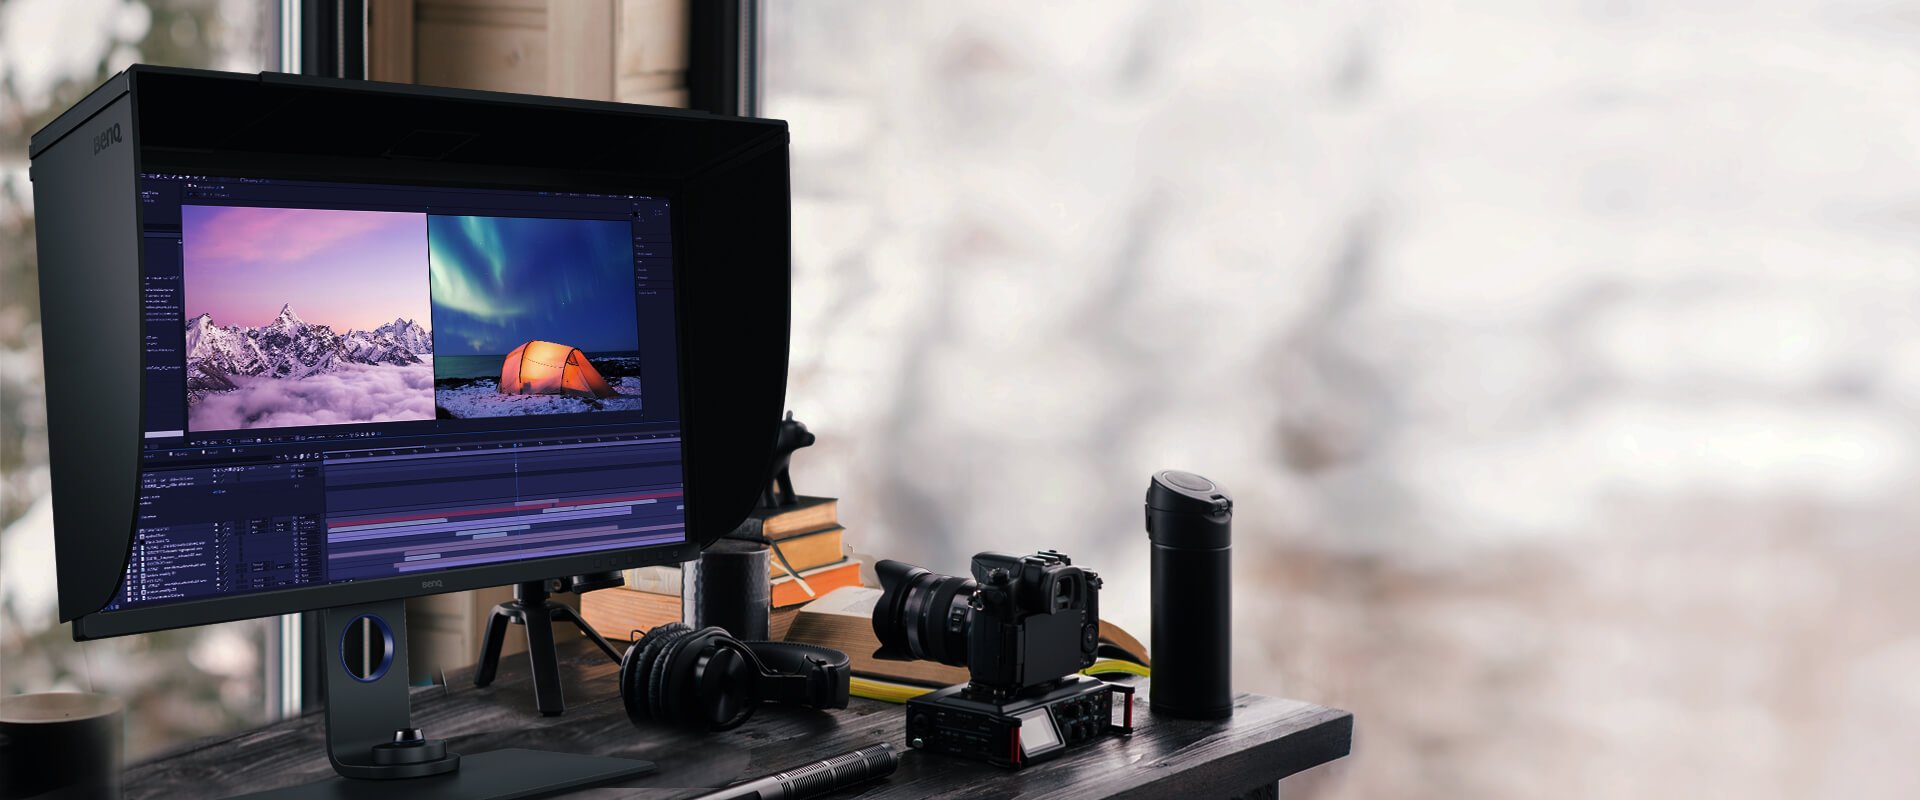 SW271C aiuta i professionisti a ottenere i migliori risultati con il supporto HDR e più formati video